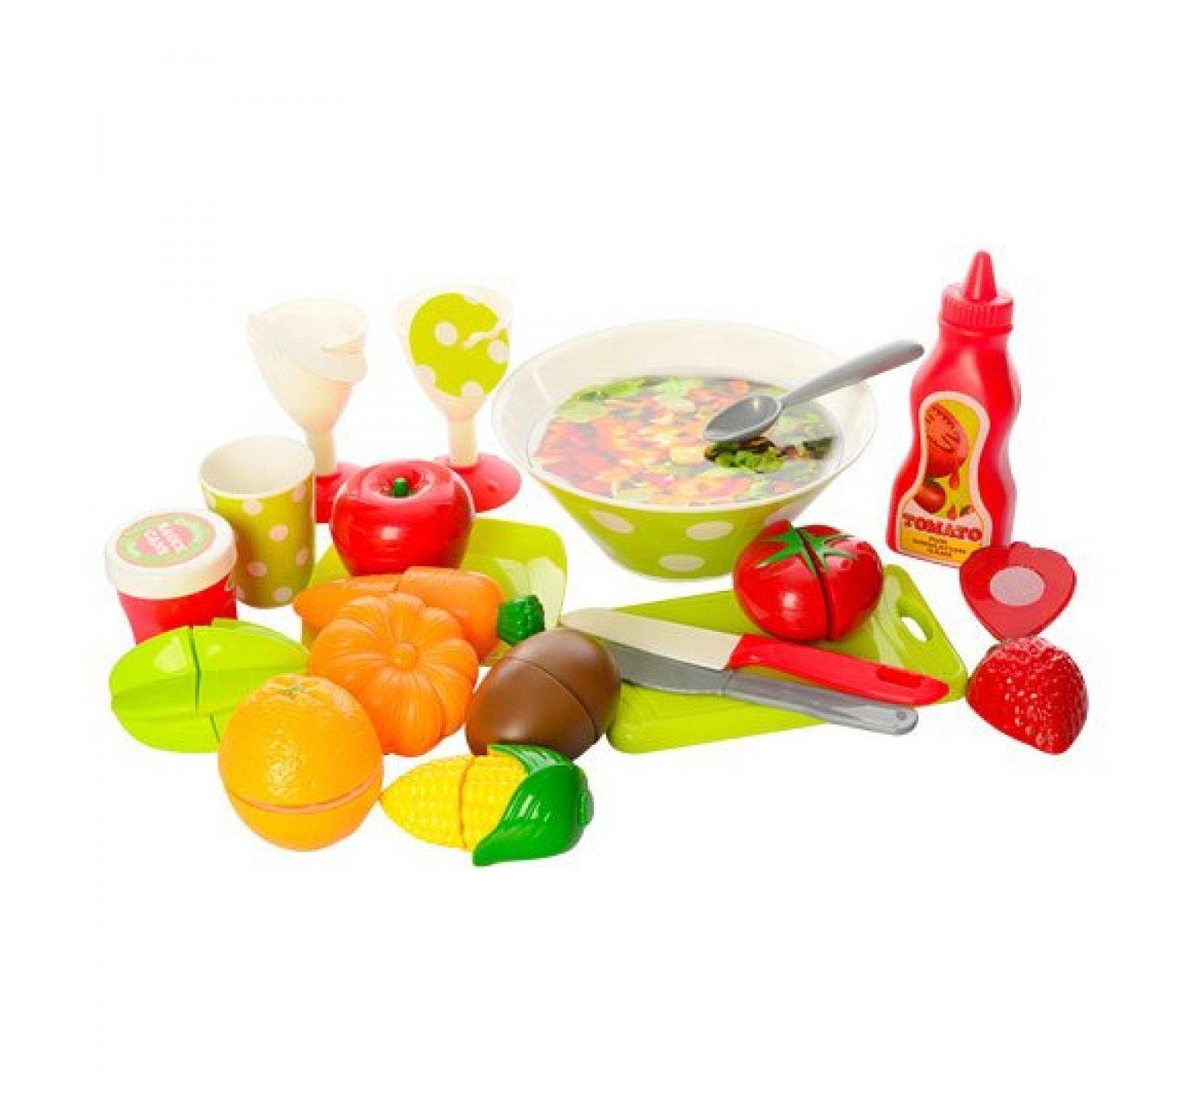 Comdaq | Comdaq Fruit Set for Kids age 3Y+ 0